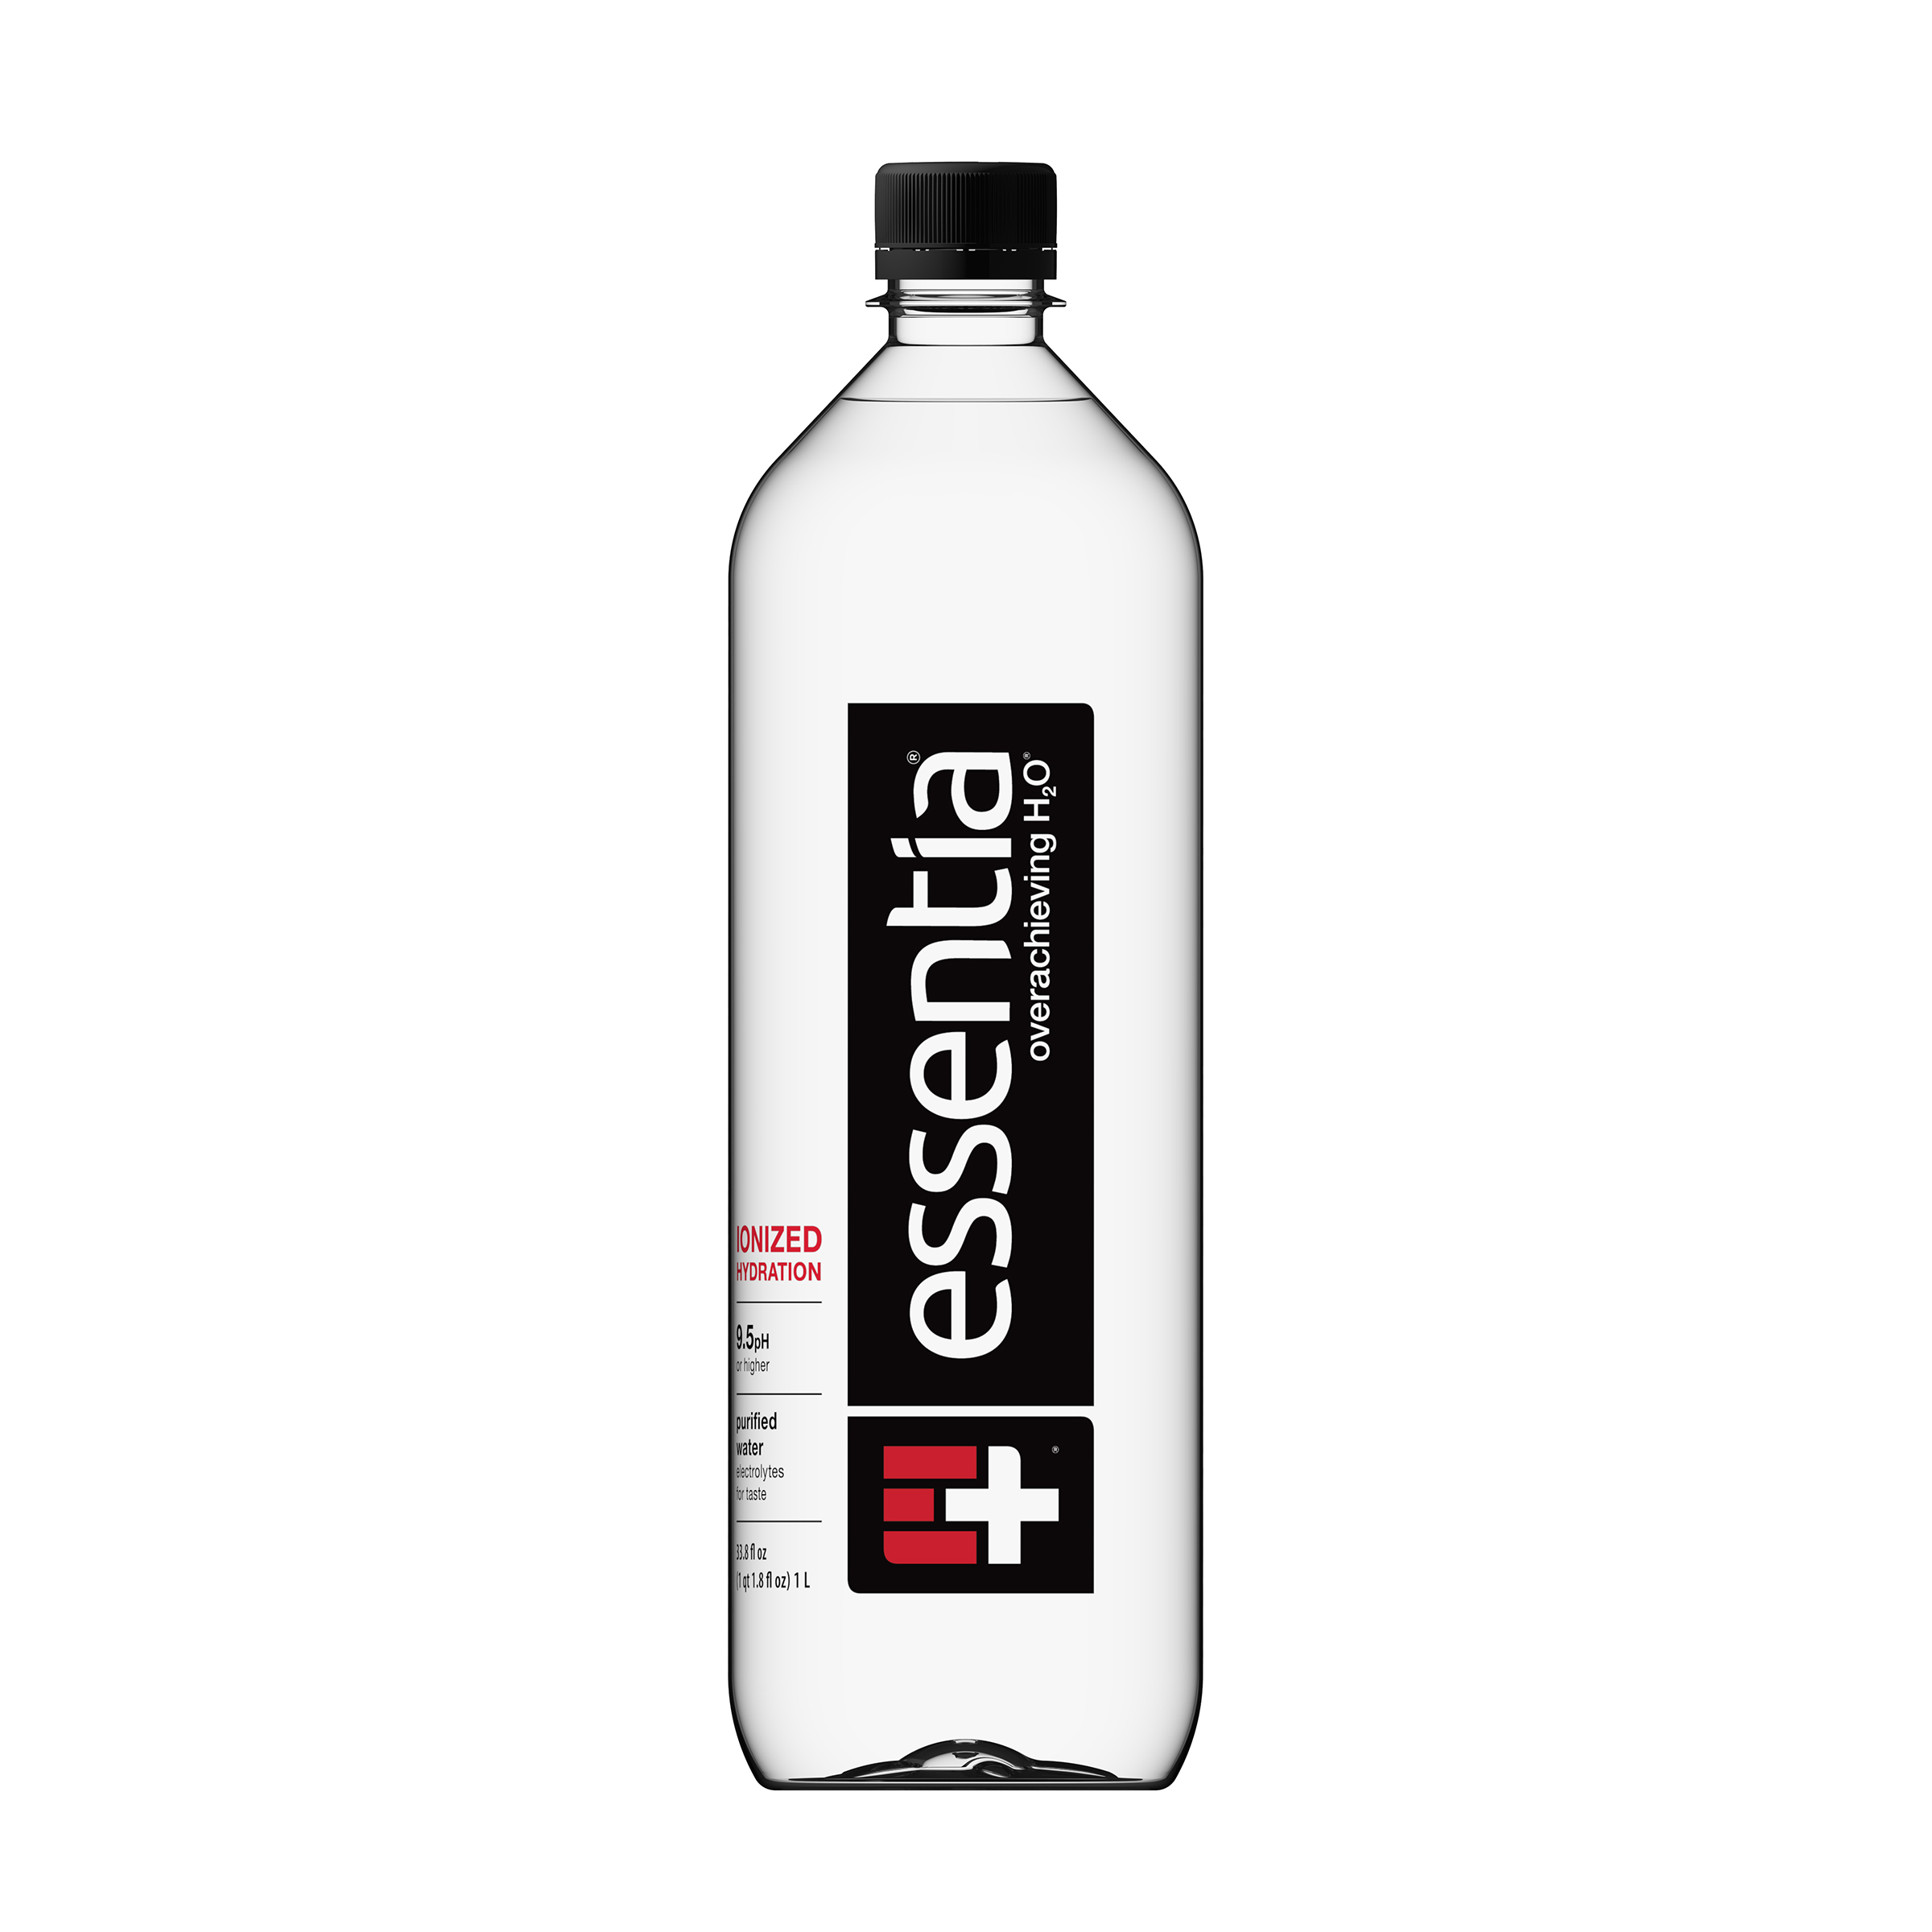 Essentia Water - 1 Liter Bottles - 6-pack 2 innerpacks per case 0.3 gal